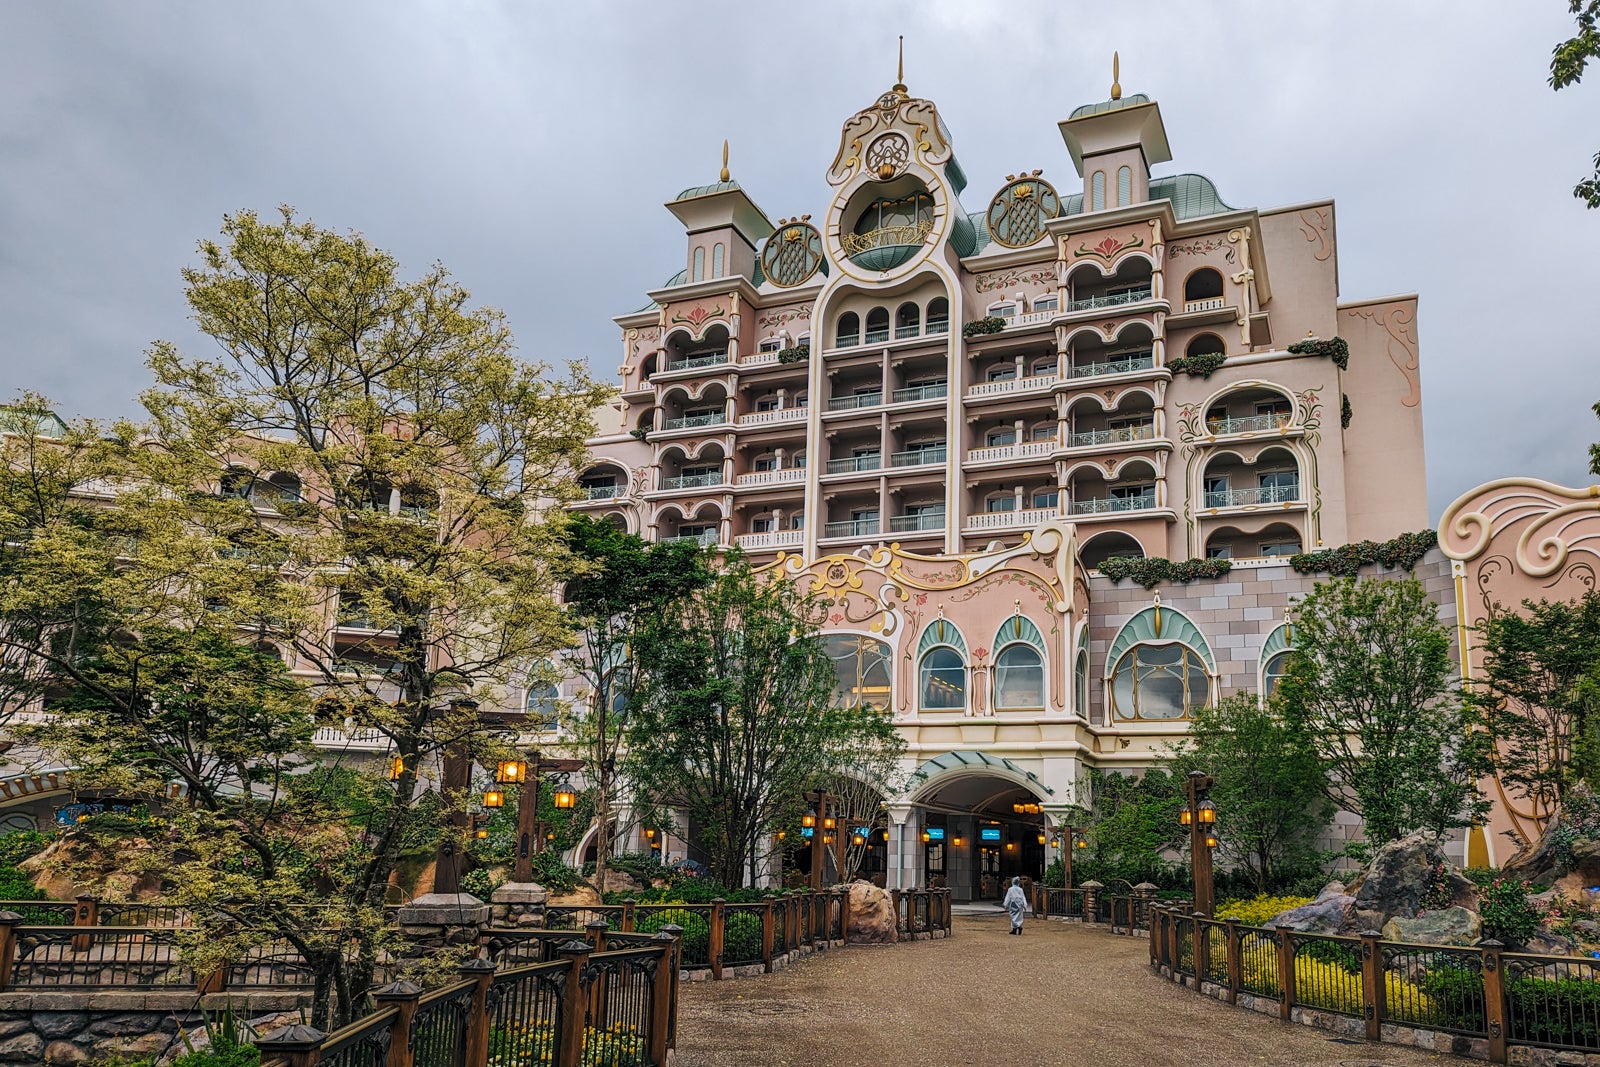 Ngoài 3 điểm tham quan trên, trong khu vui chơi mới mở còn có khách sạn mới xây Tokyo DisneySea Fantasy Springs. Khách sạn gồm 2 tòa nhà, loại sang là Grand Chateau (56 phòng) và loại deluxe là Fantasy Chateau (419 phòng). Giá phòng khá cao từ 66.000 yên (420 USD) đến 300.000 yên (khoảng 1.930 USD). 